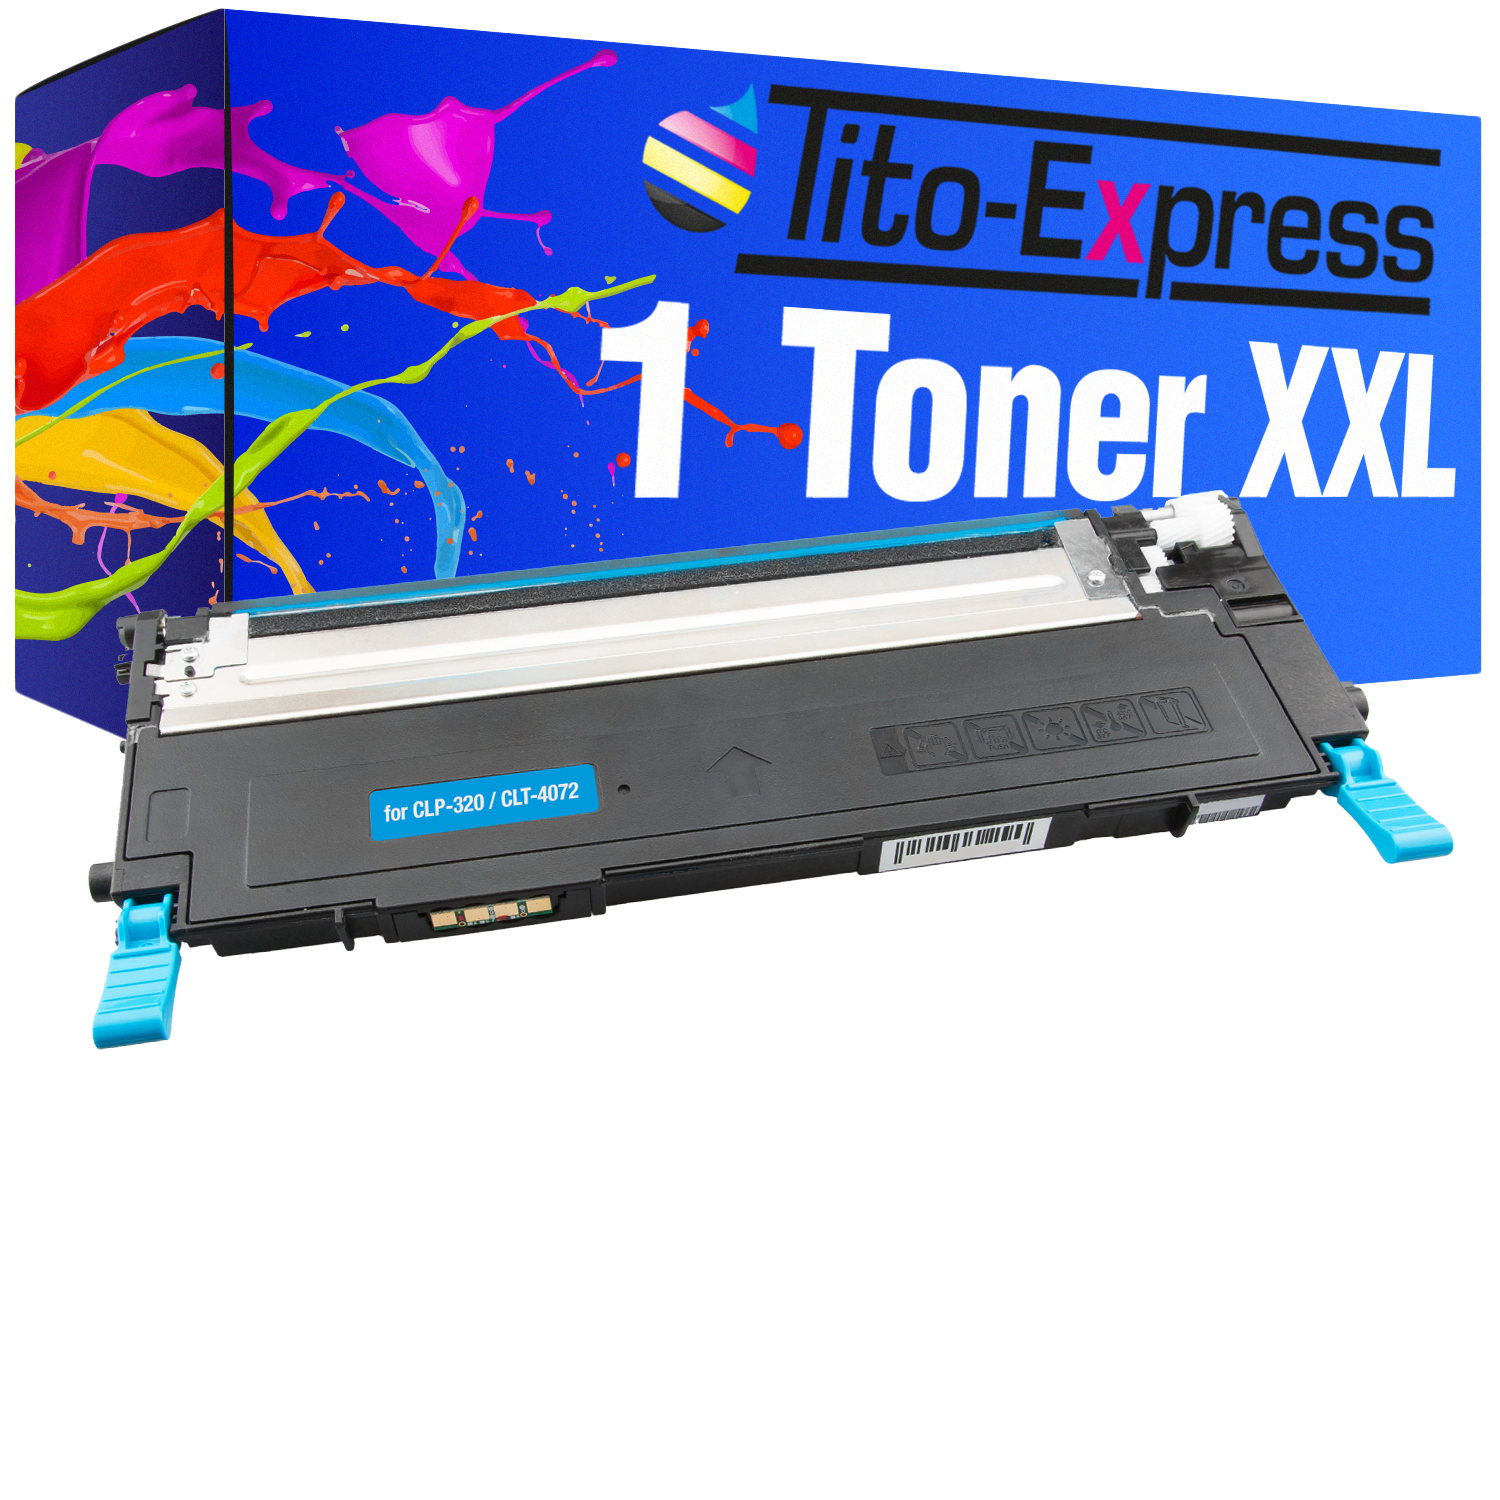 TITO-EXPRESS PLATINUMSERIE 1 Toner Samsung cyan Toner ersetzt CLT-4072S (ST994A)